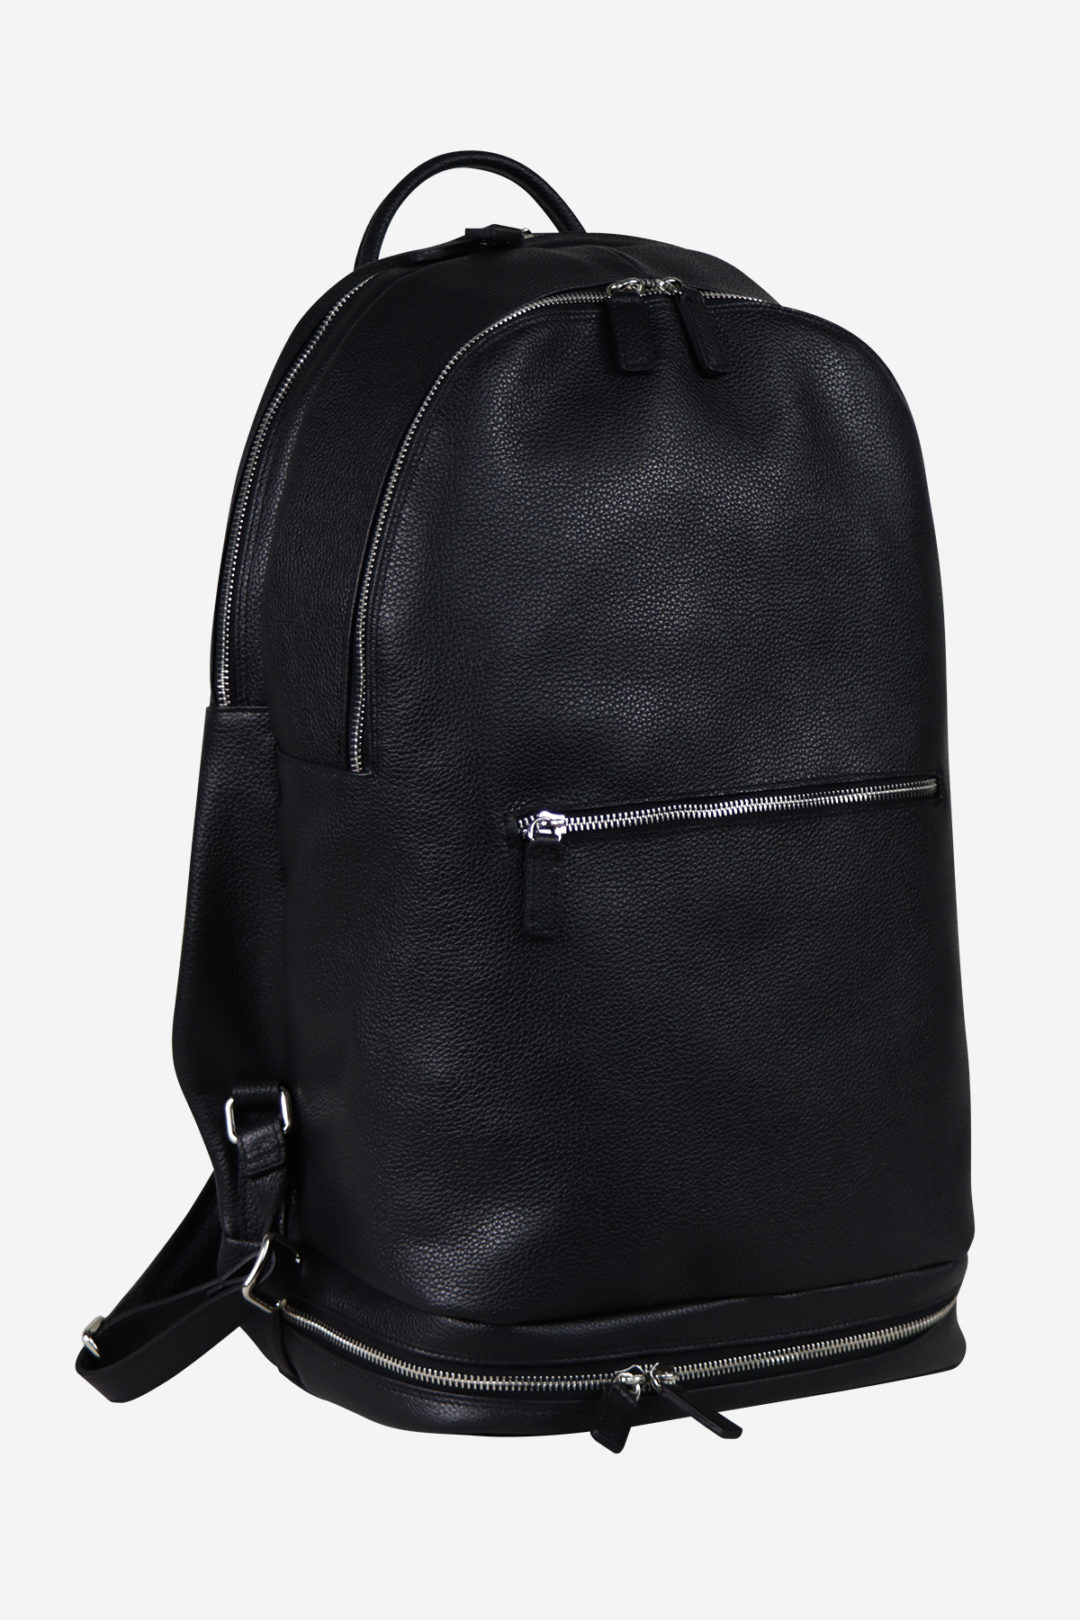 Sport Modern Backpack black edition waterproof handmade in italy genuine leather